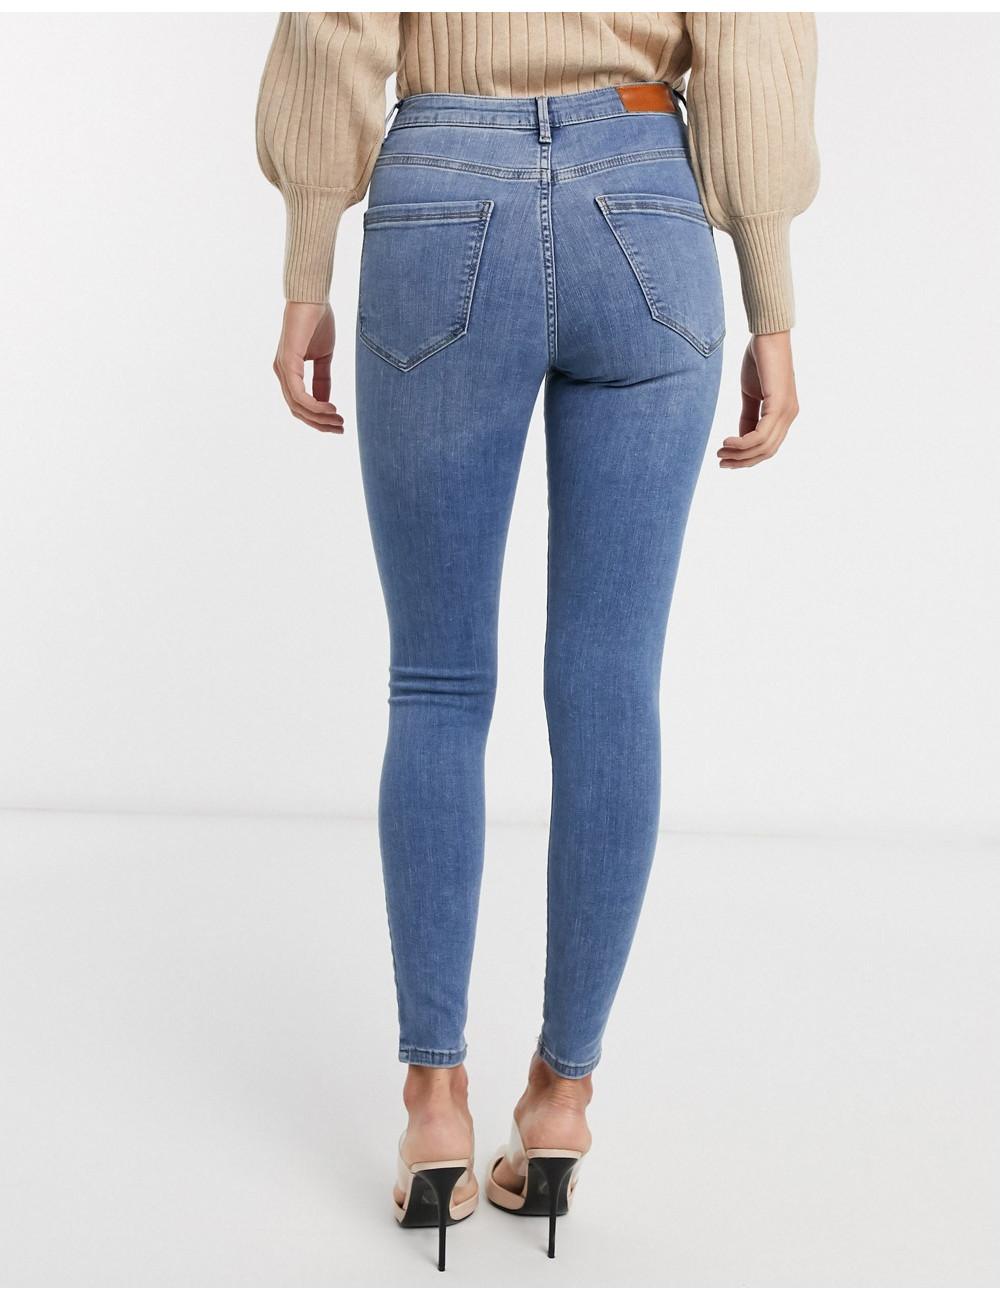 Vero Moda skinny jean with...